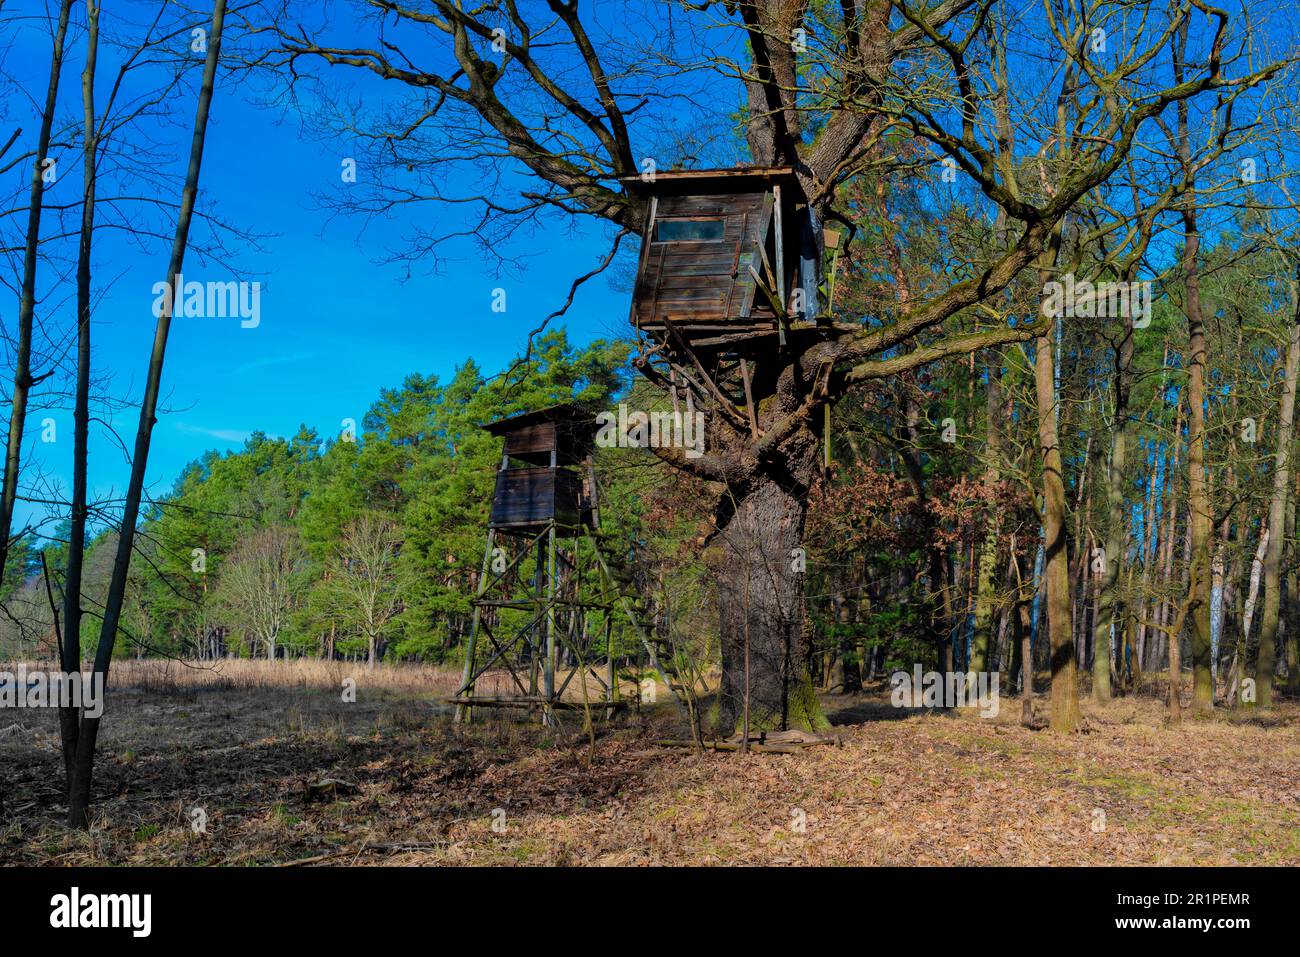 Haut stand pour les chasseurs en bois au bord de la forêt, donnant sur un grand pré, maison d'arbre supplémentaire dans un grand chêne Banque D'Images